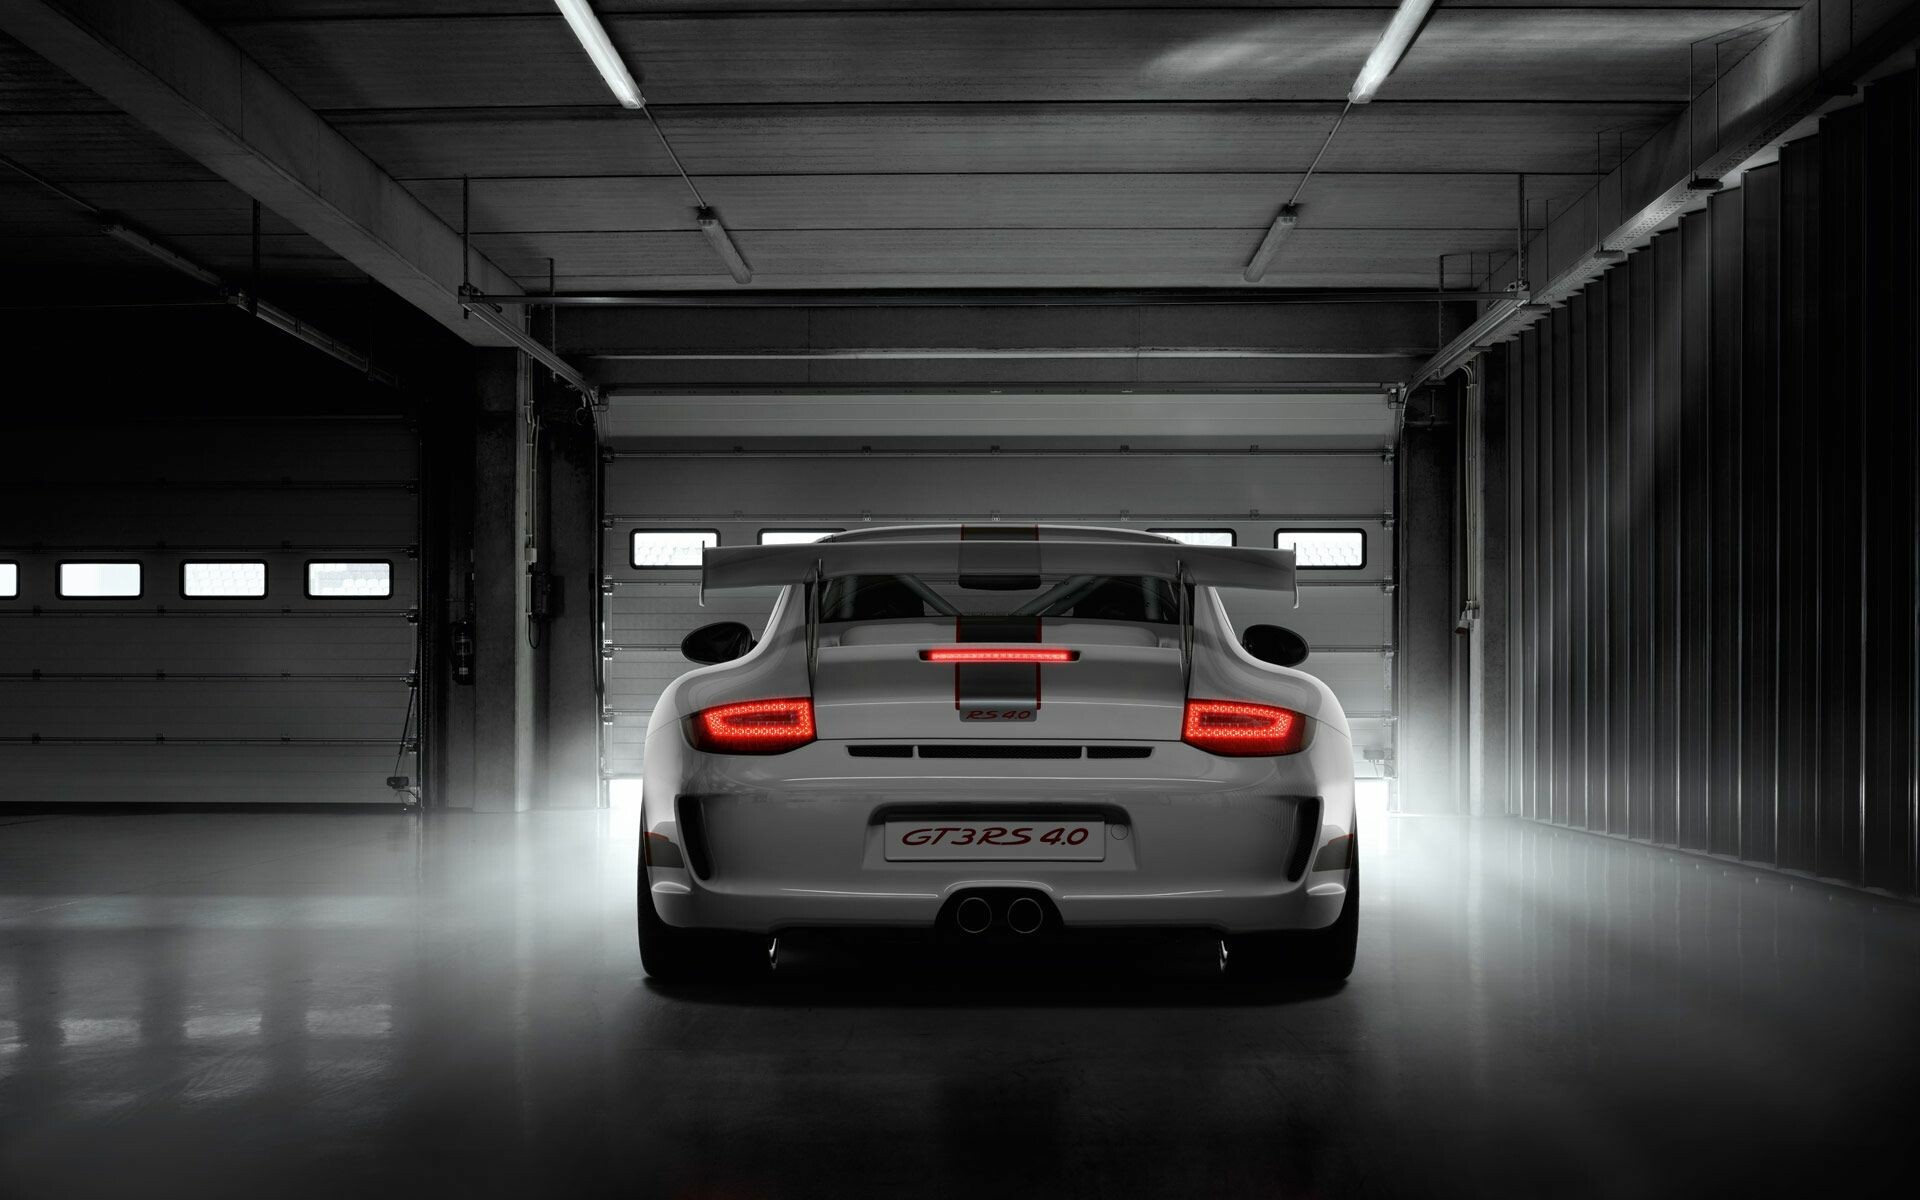 Fantastischer Porsche GT3, Automobilmeisterwerk, Aufregende Geschwindigkeit, Ikonisches Design, 1920x1200 HD Desktop